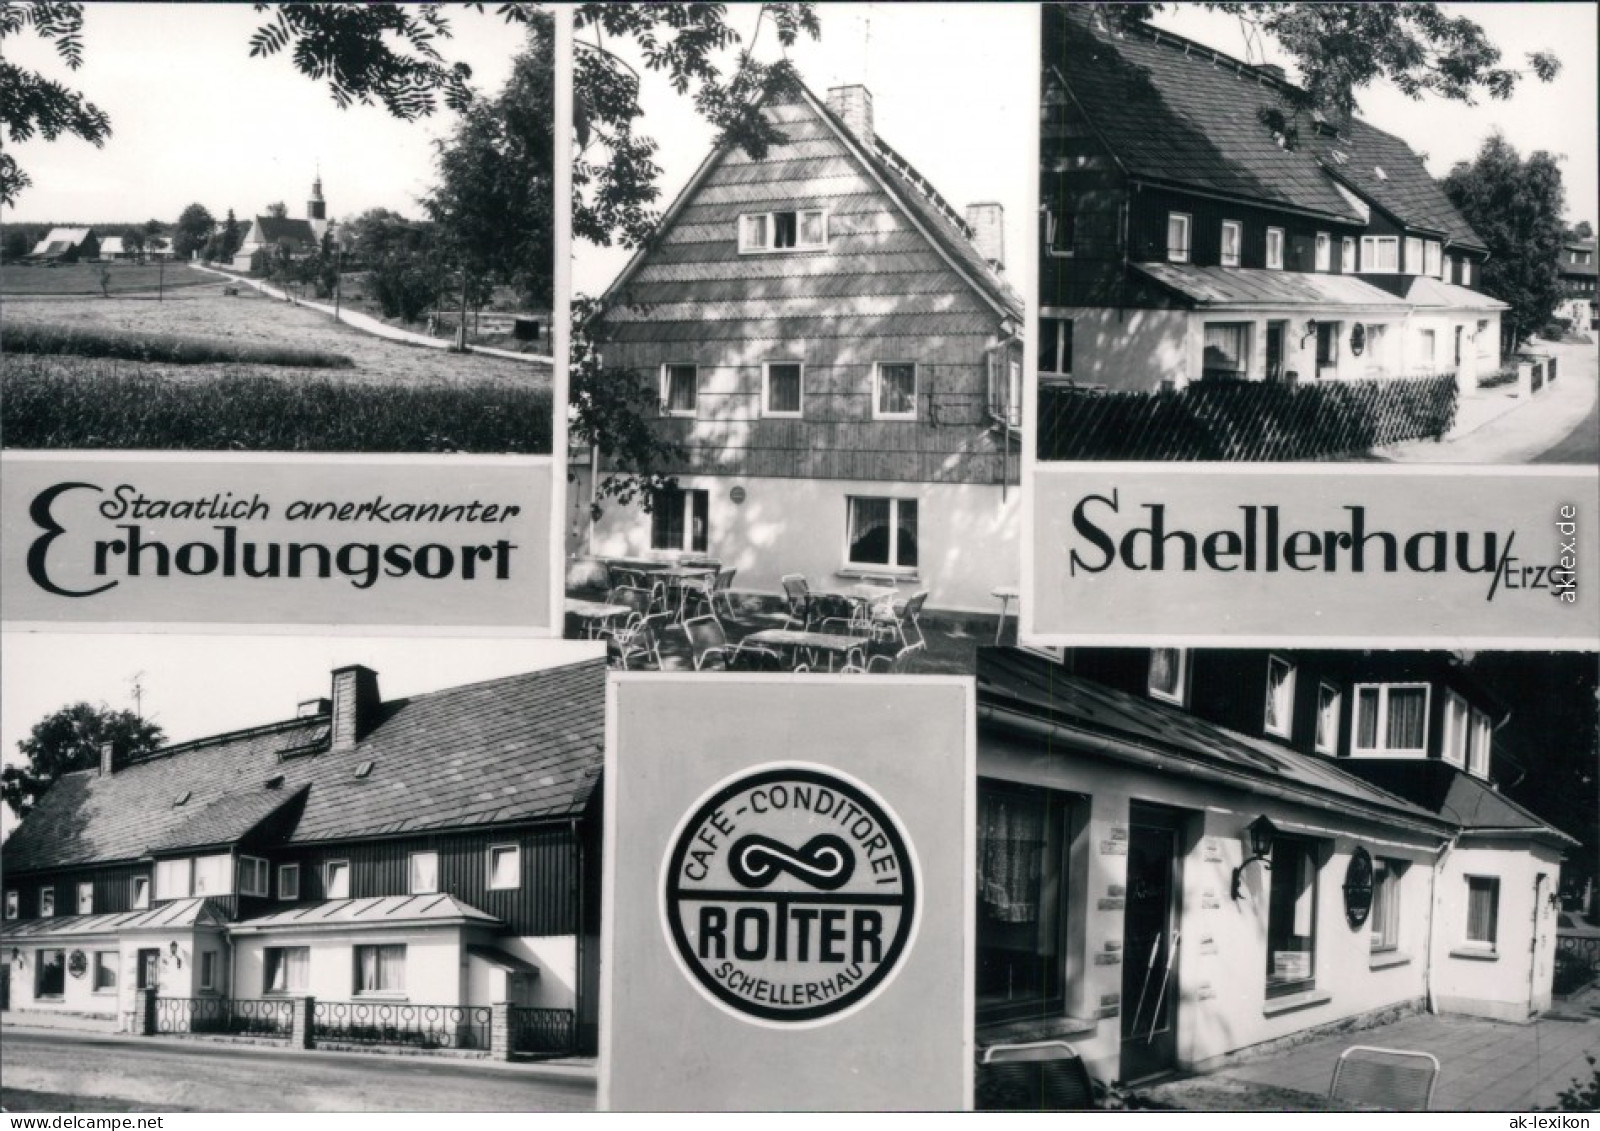 Schellerhau-Altenberg (Erzgebirge) Café - Conditorei Rotter 1977 - Schellerhau